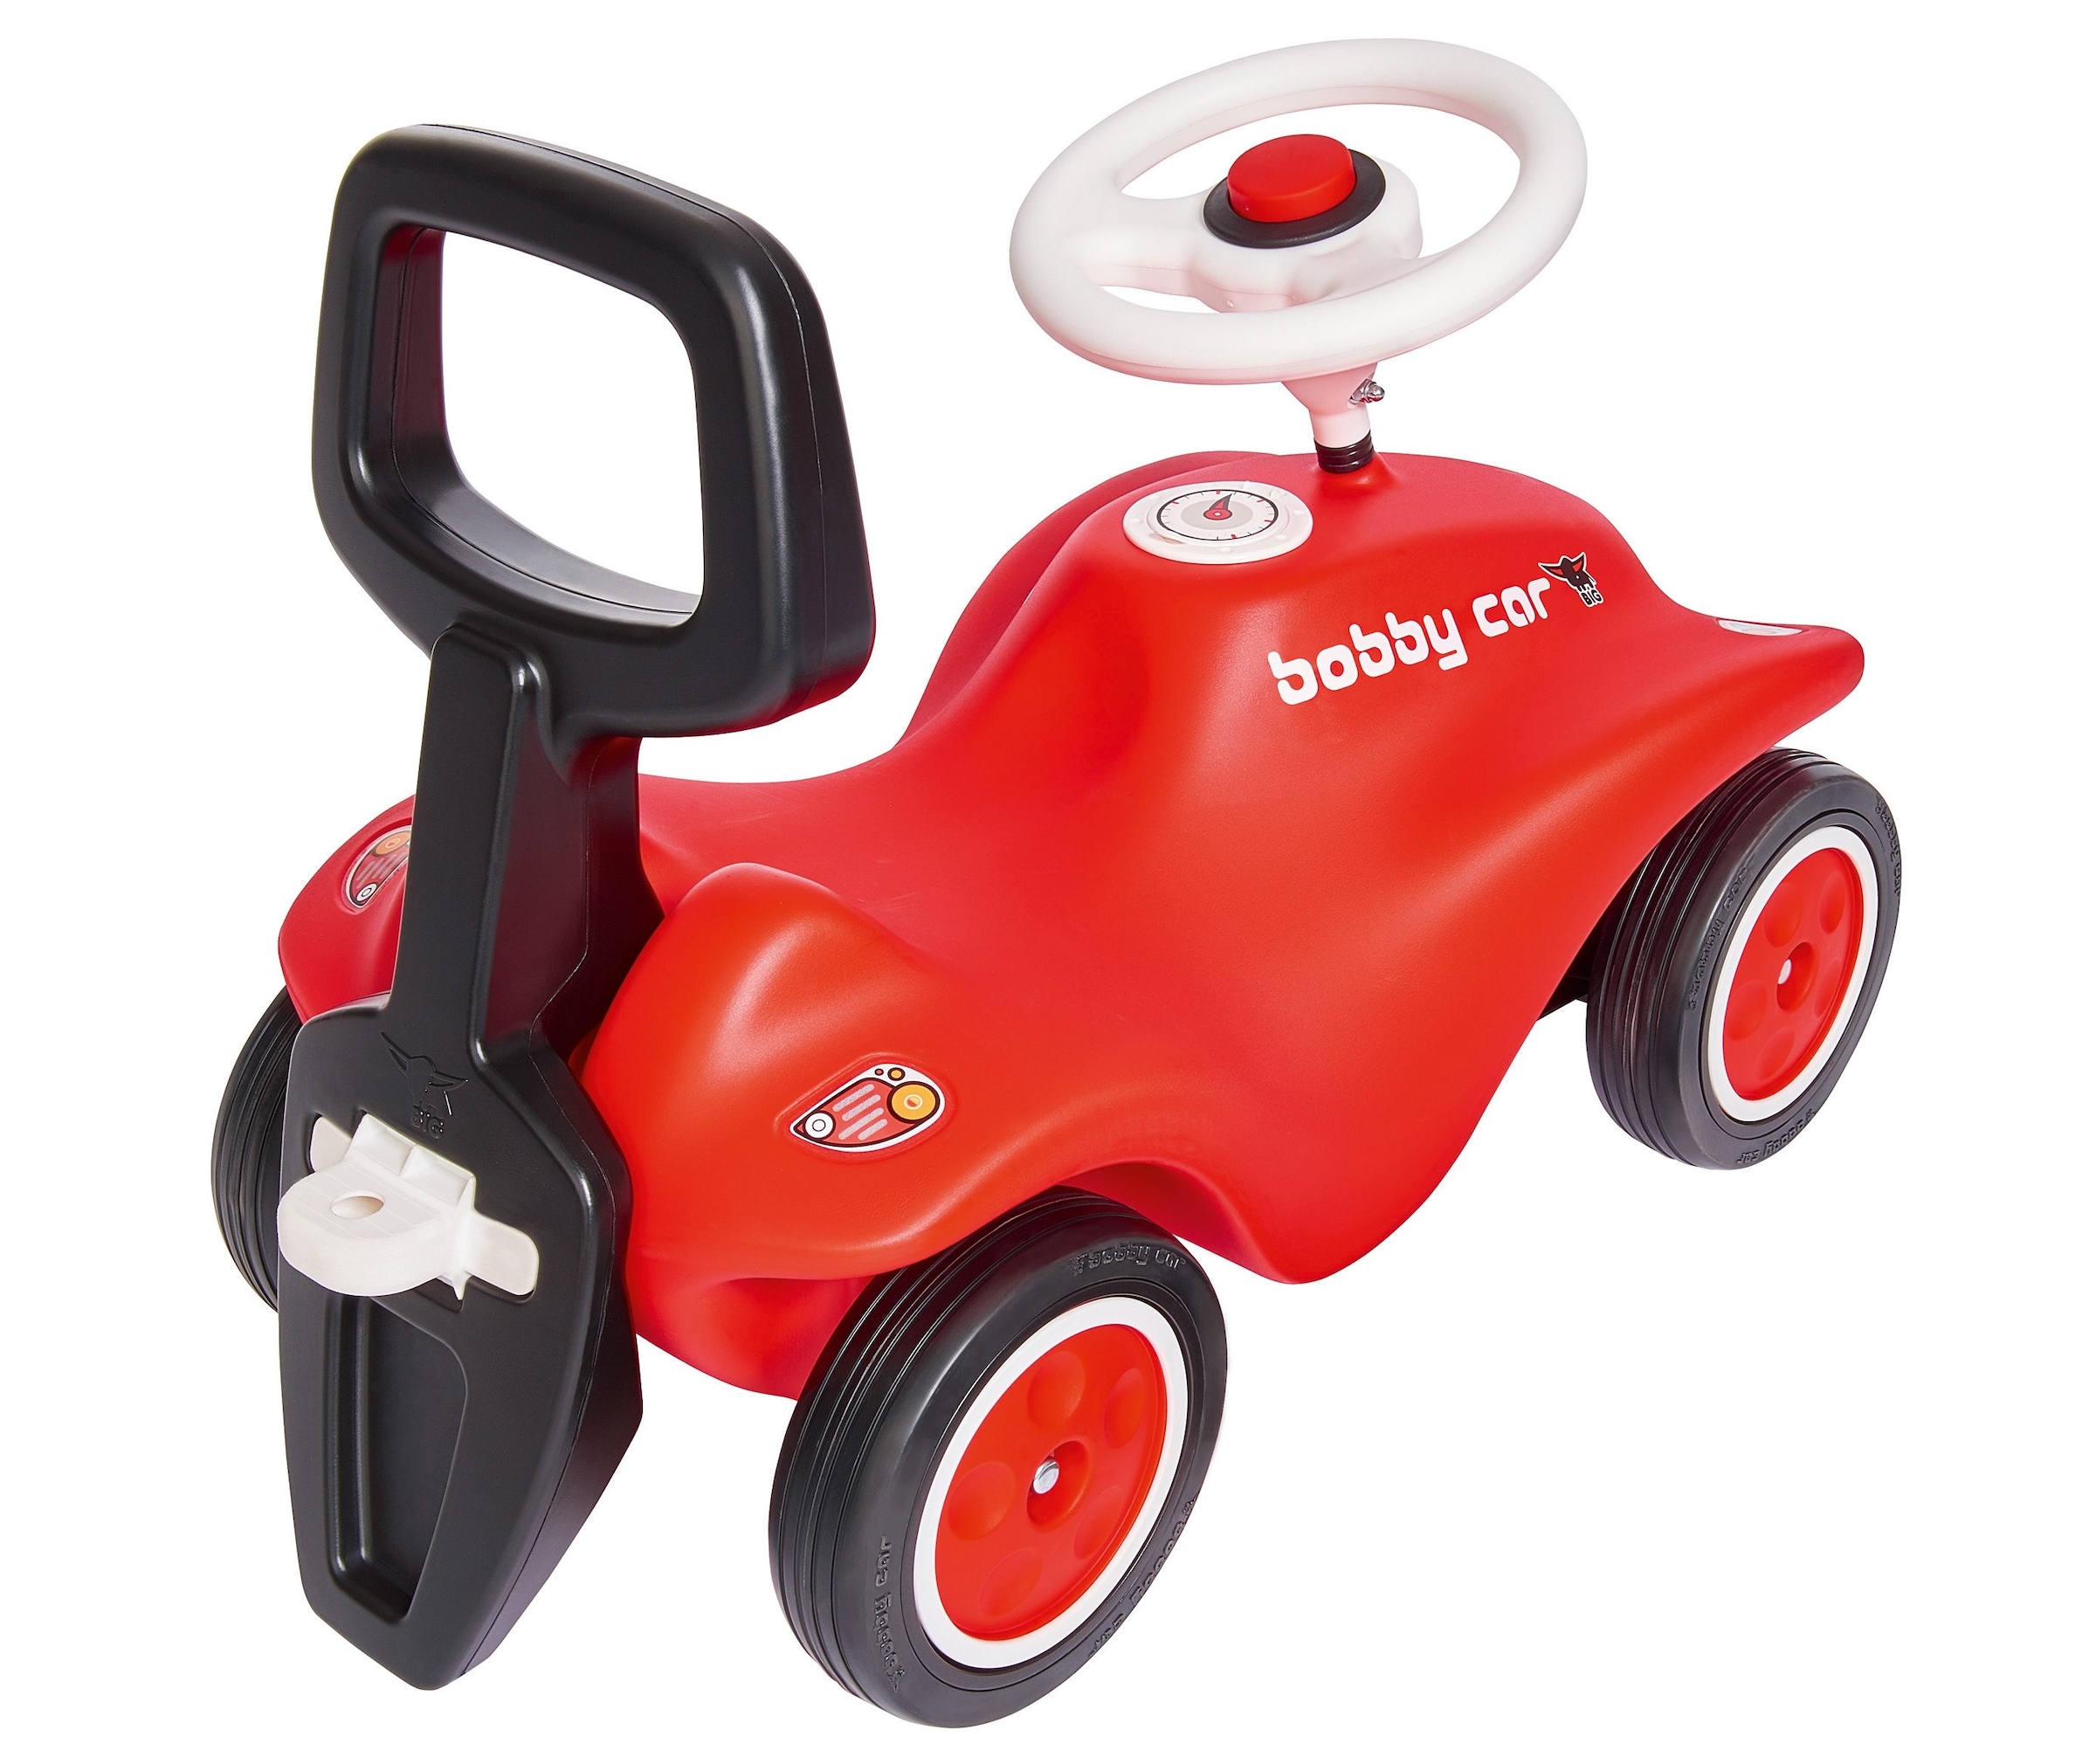 BIG Kinderfahrzeug Lauflernhilfe »BIG Bobby Car Walker 2in1 Zubehör«, 2in1  Rückenlehne & Lauflernhilfe, Made in Germany bei